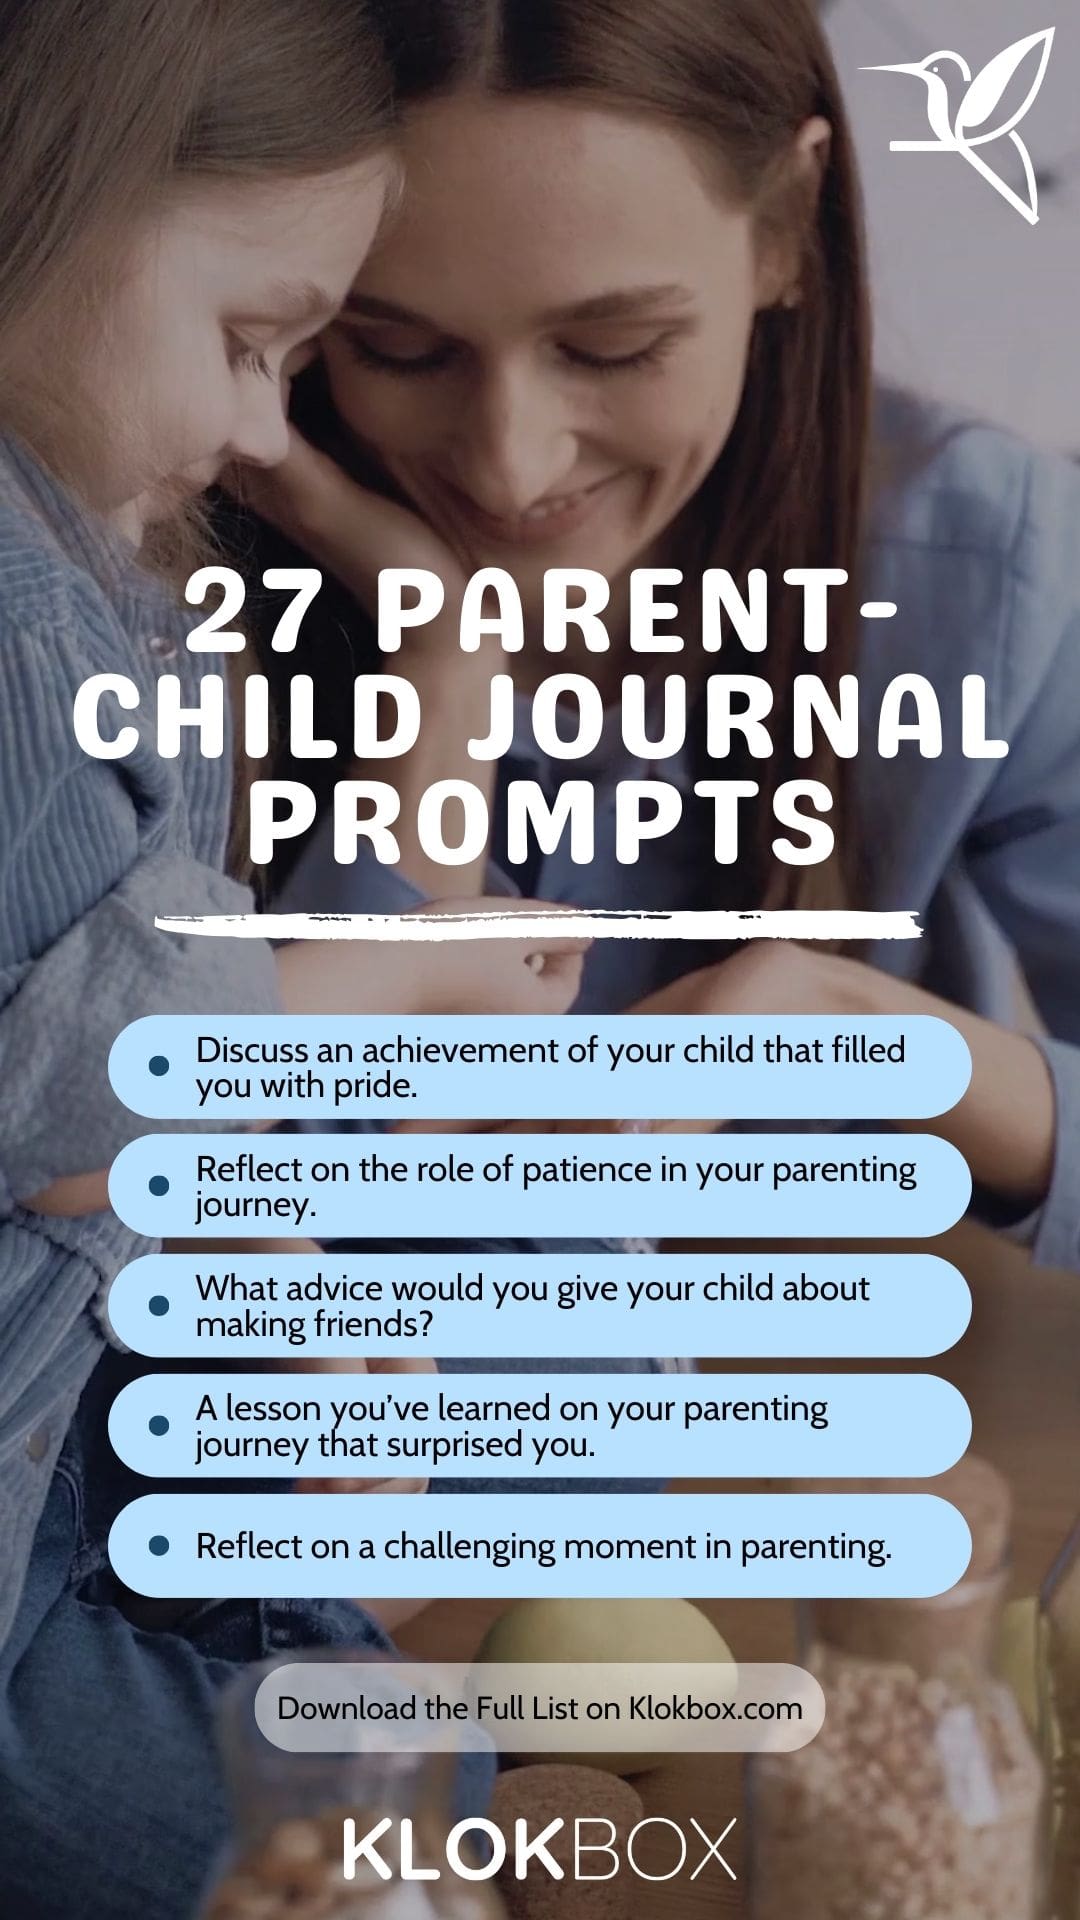 27 Parent-Child Journal Prompts